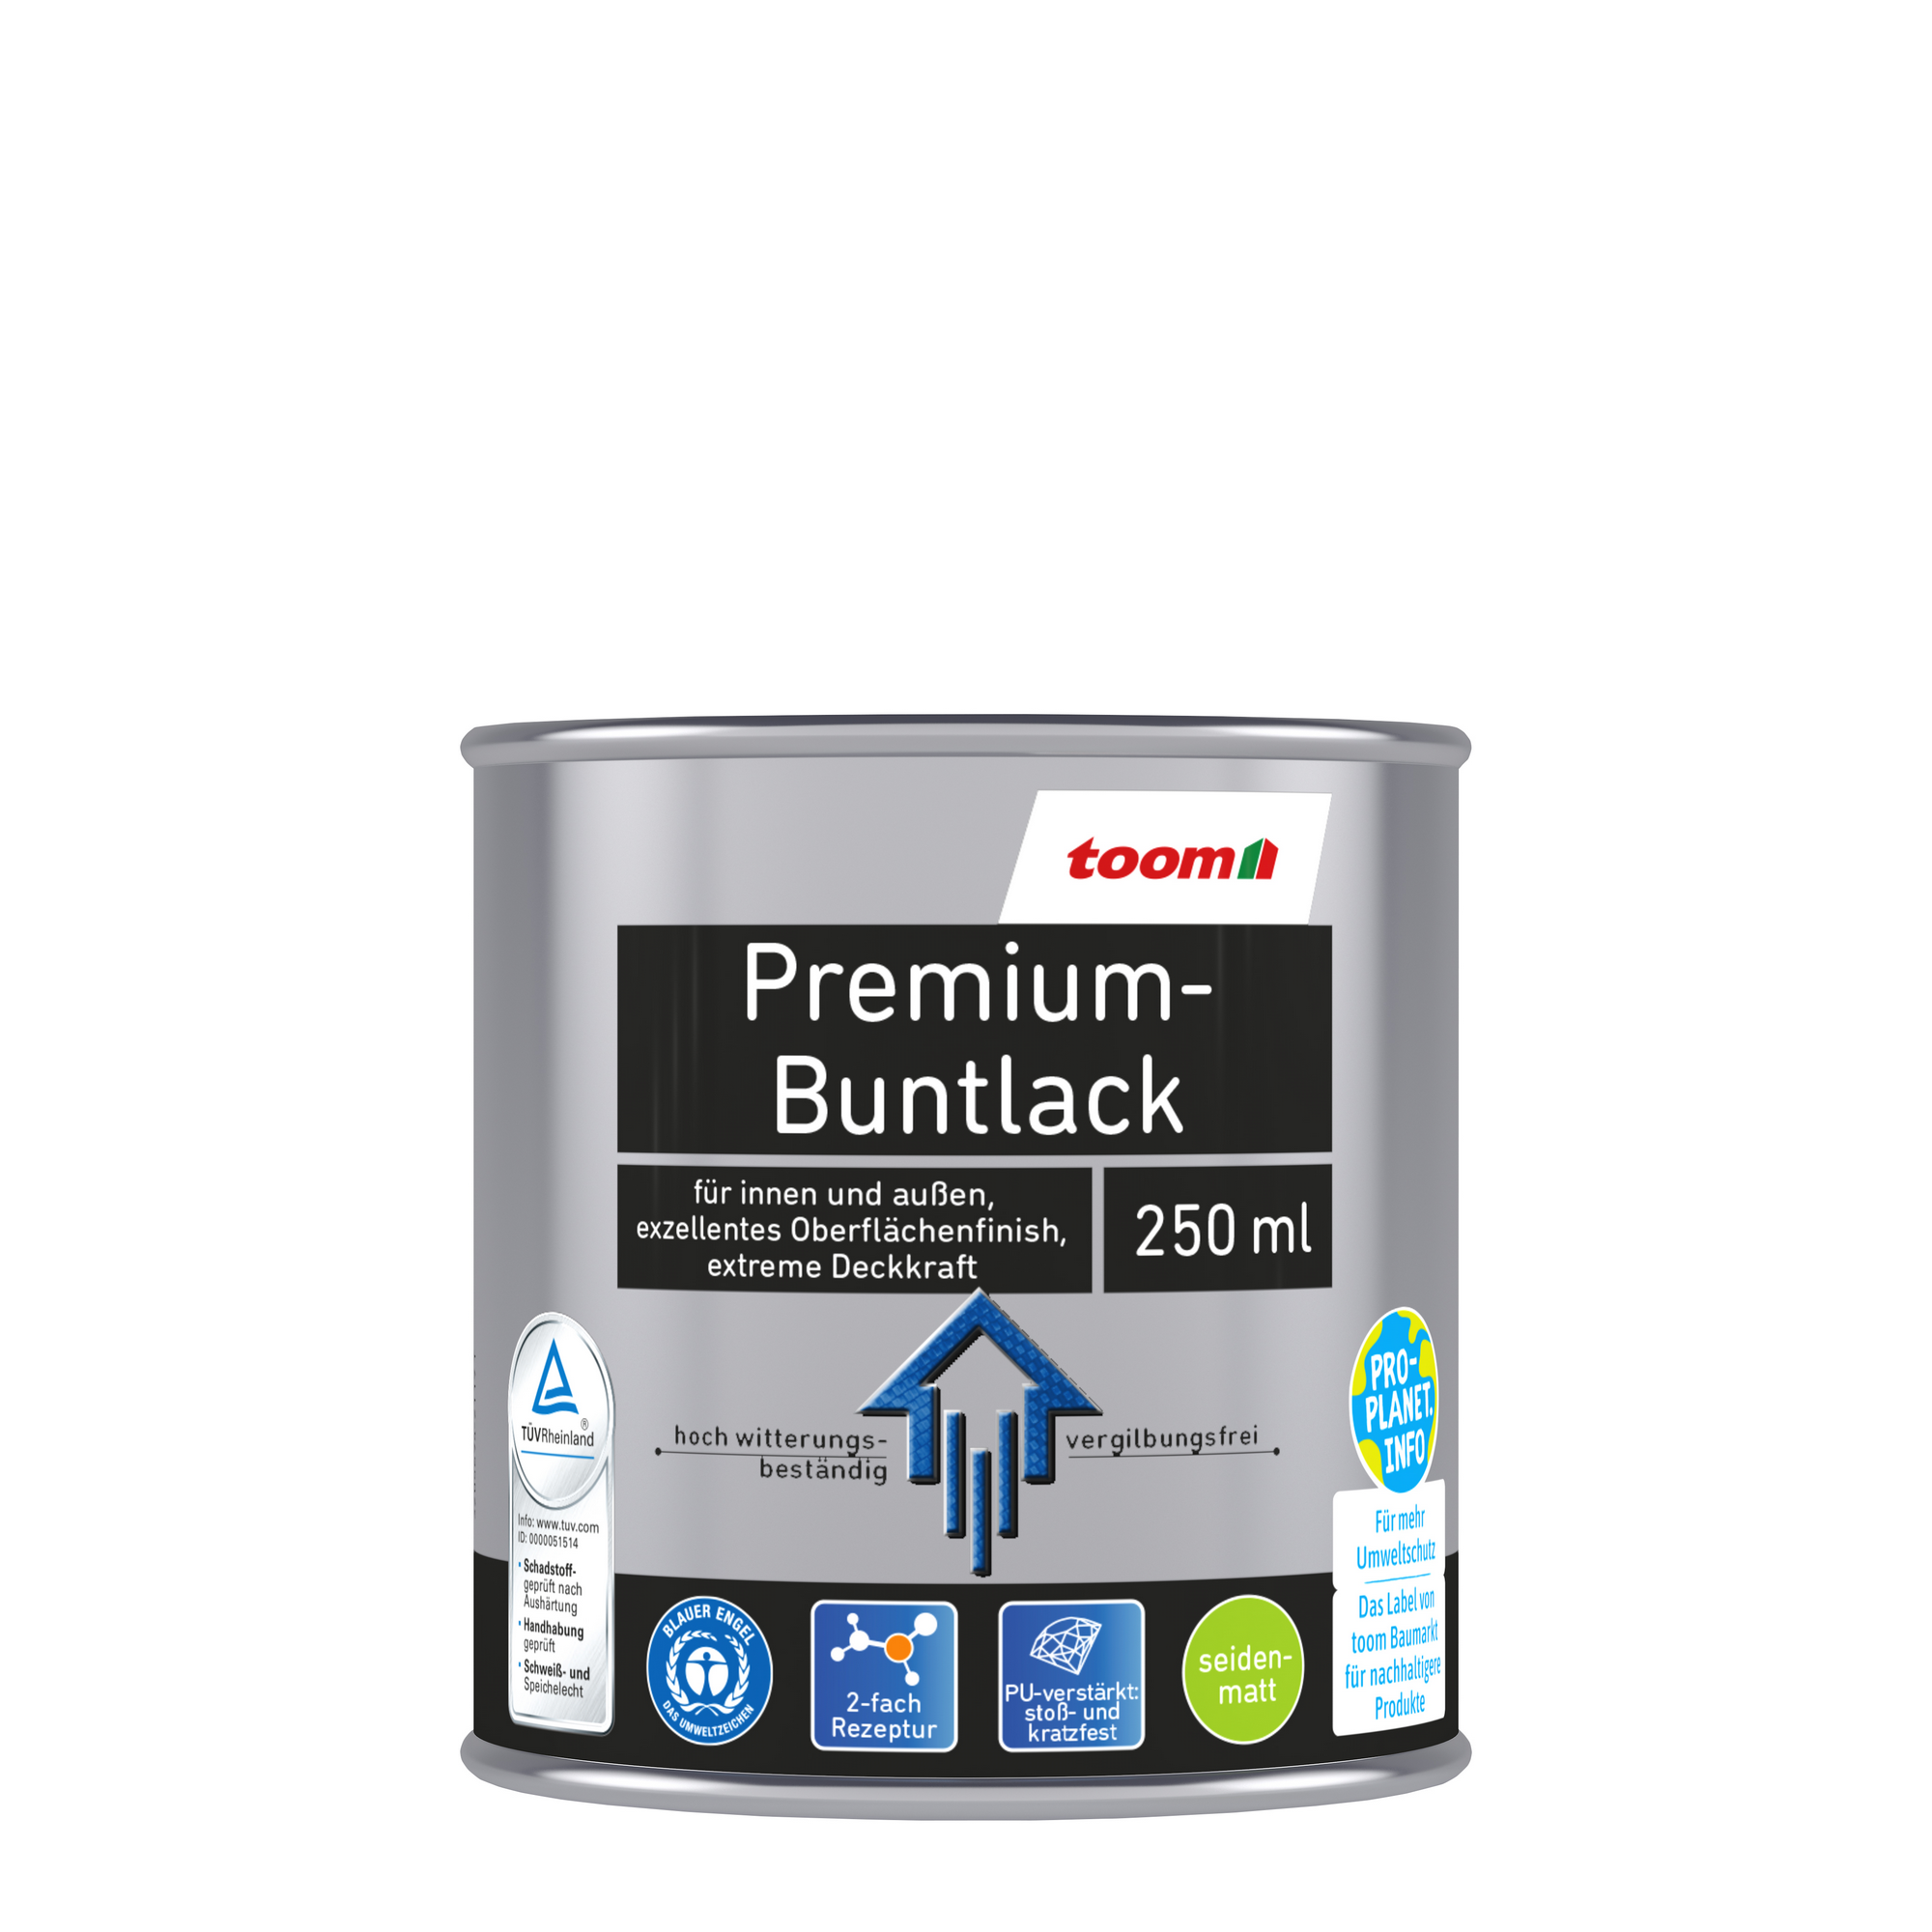 toom Premium-Buntlack grau seidenmatt 250 ml